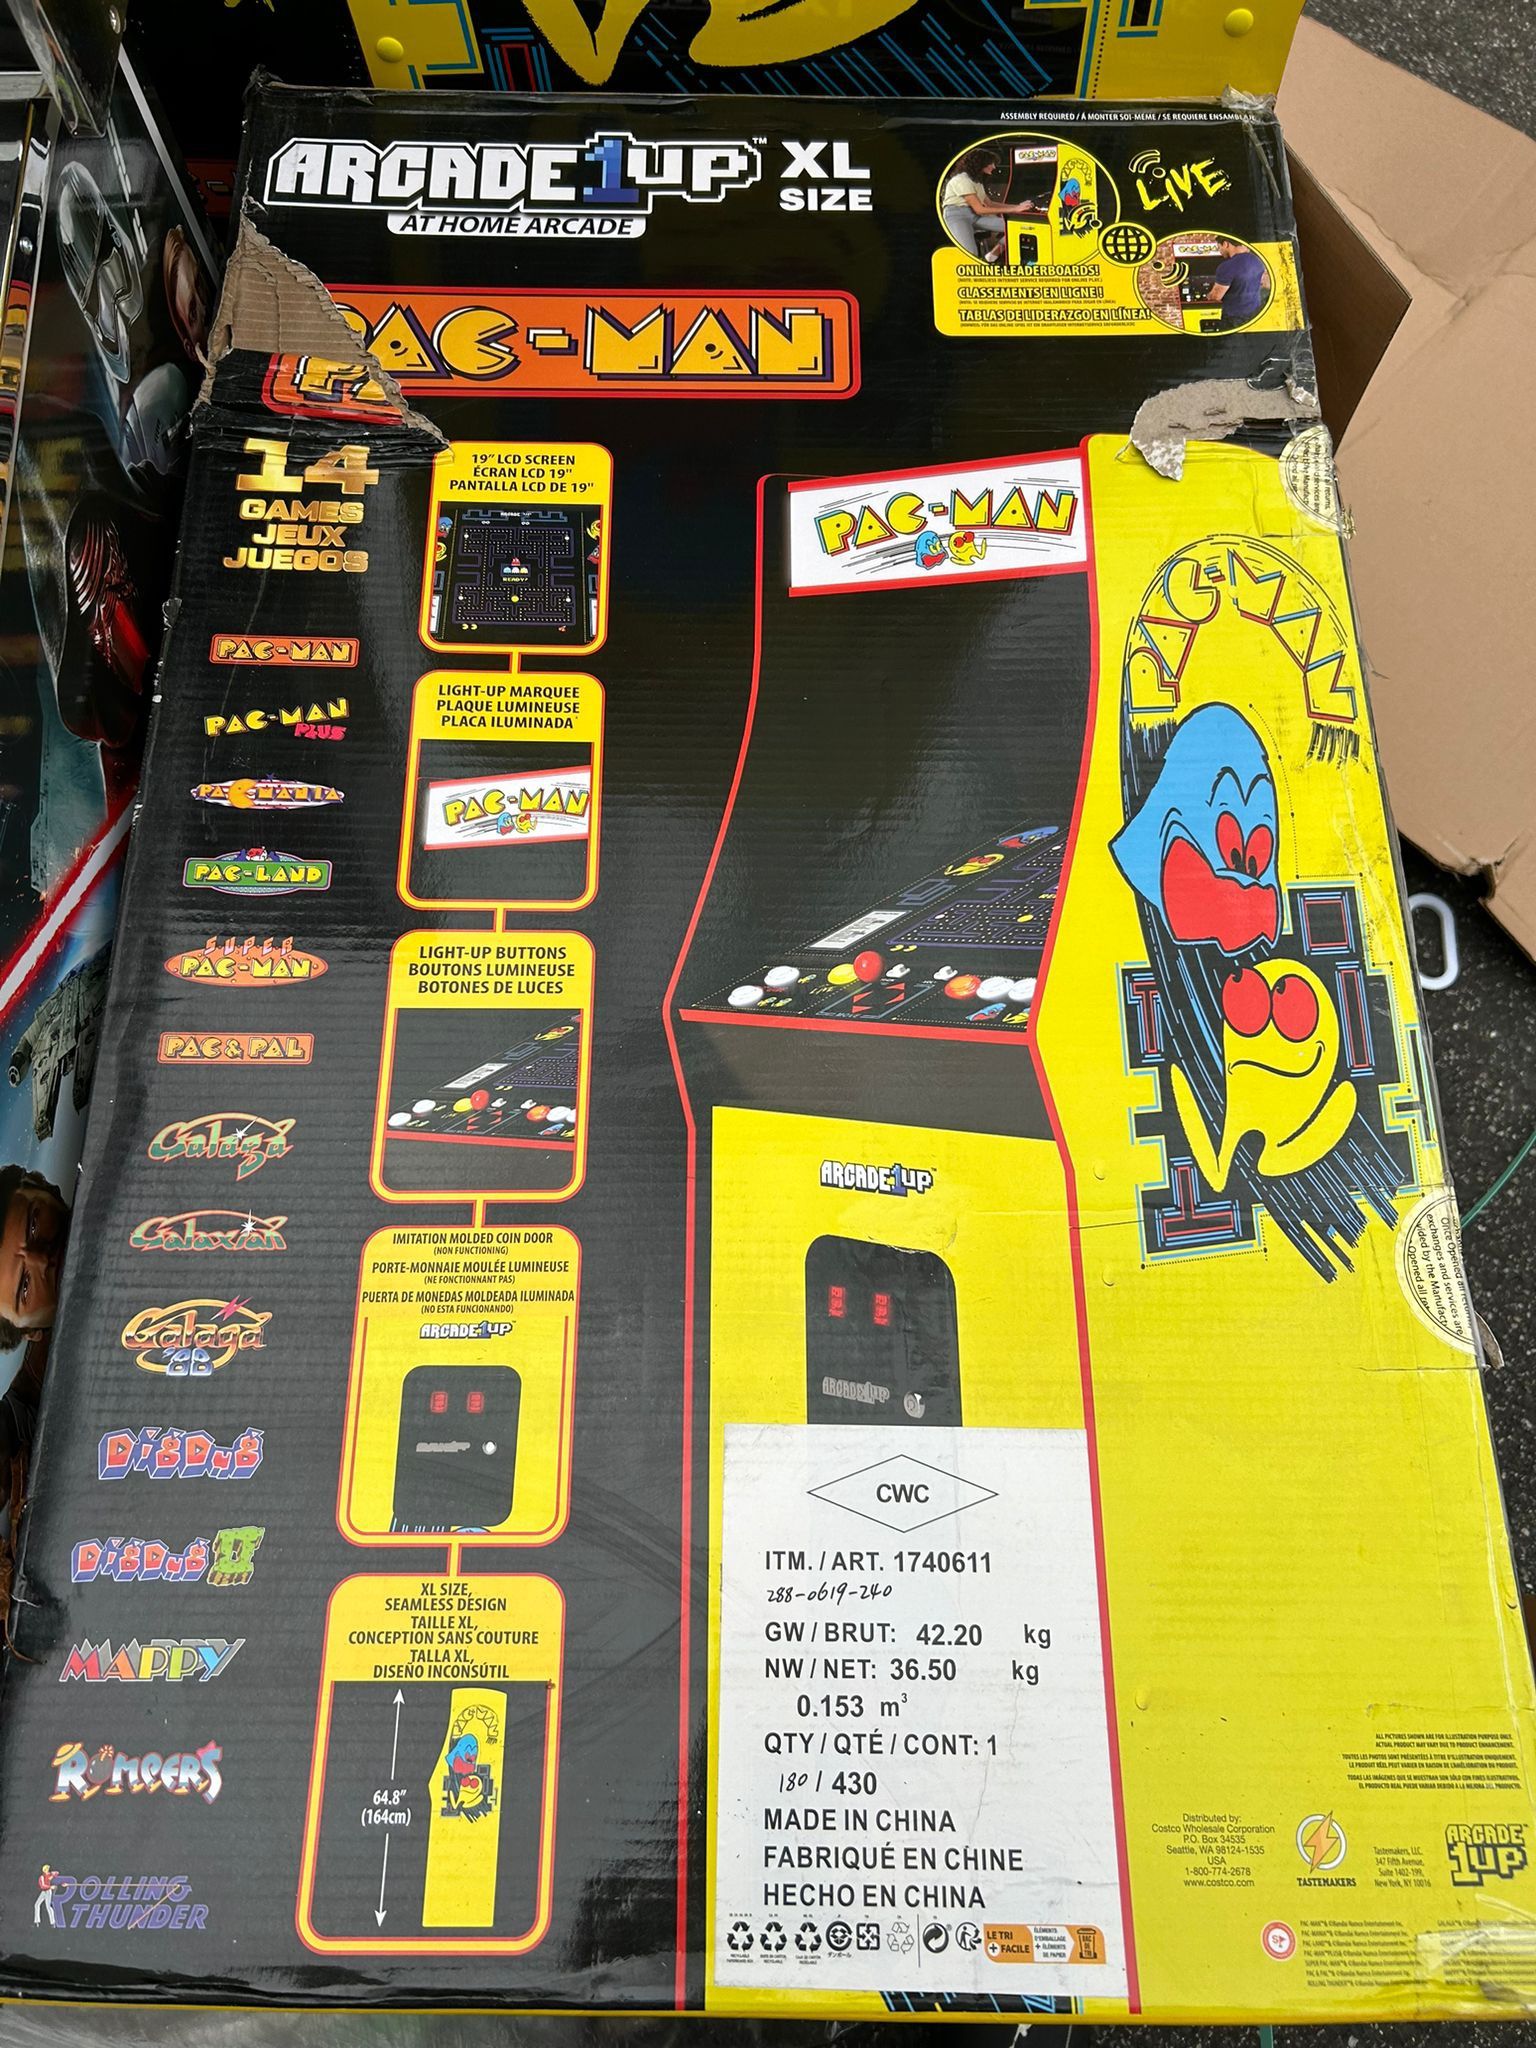 Arcade1up PAC-MAN XL Arcade Machine 14 Games in 1 